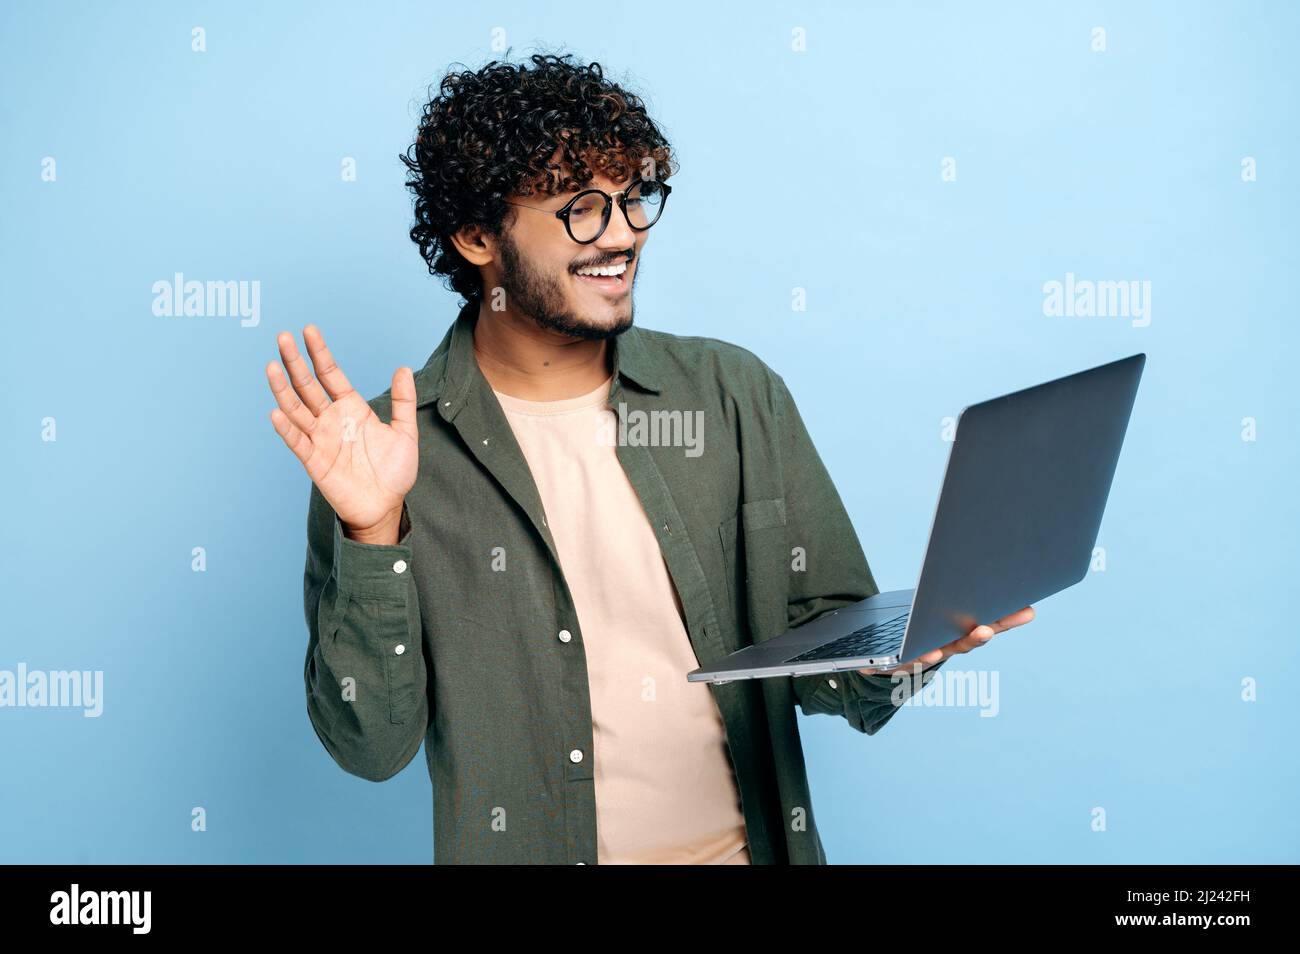 Comunicazione video online. Il tipo indiano o arabo, in abiti casual, freelancer o studente, utilizza un computer portatile per una videoconferenza, si erge su sfondo blu isolato, saluta un interlocutore, sorridendo Foto Stock